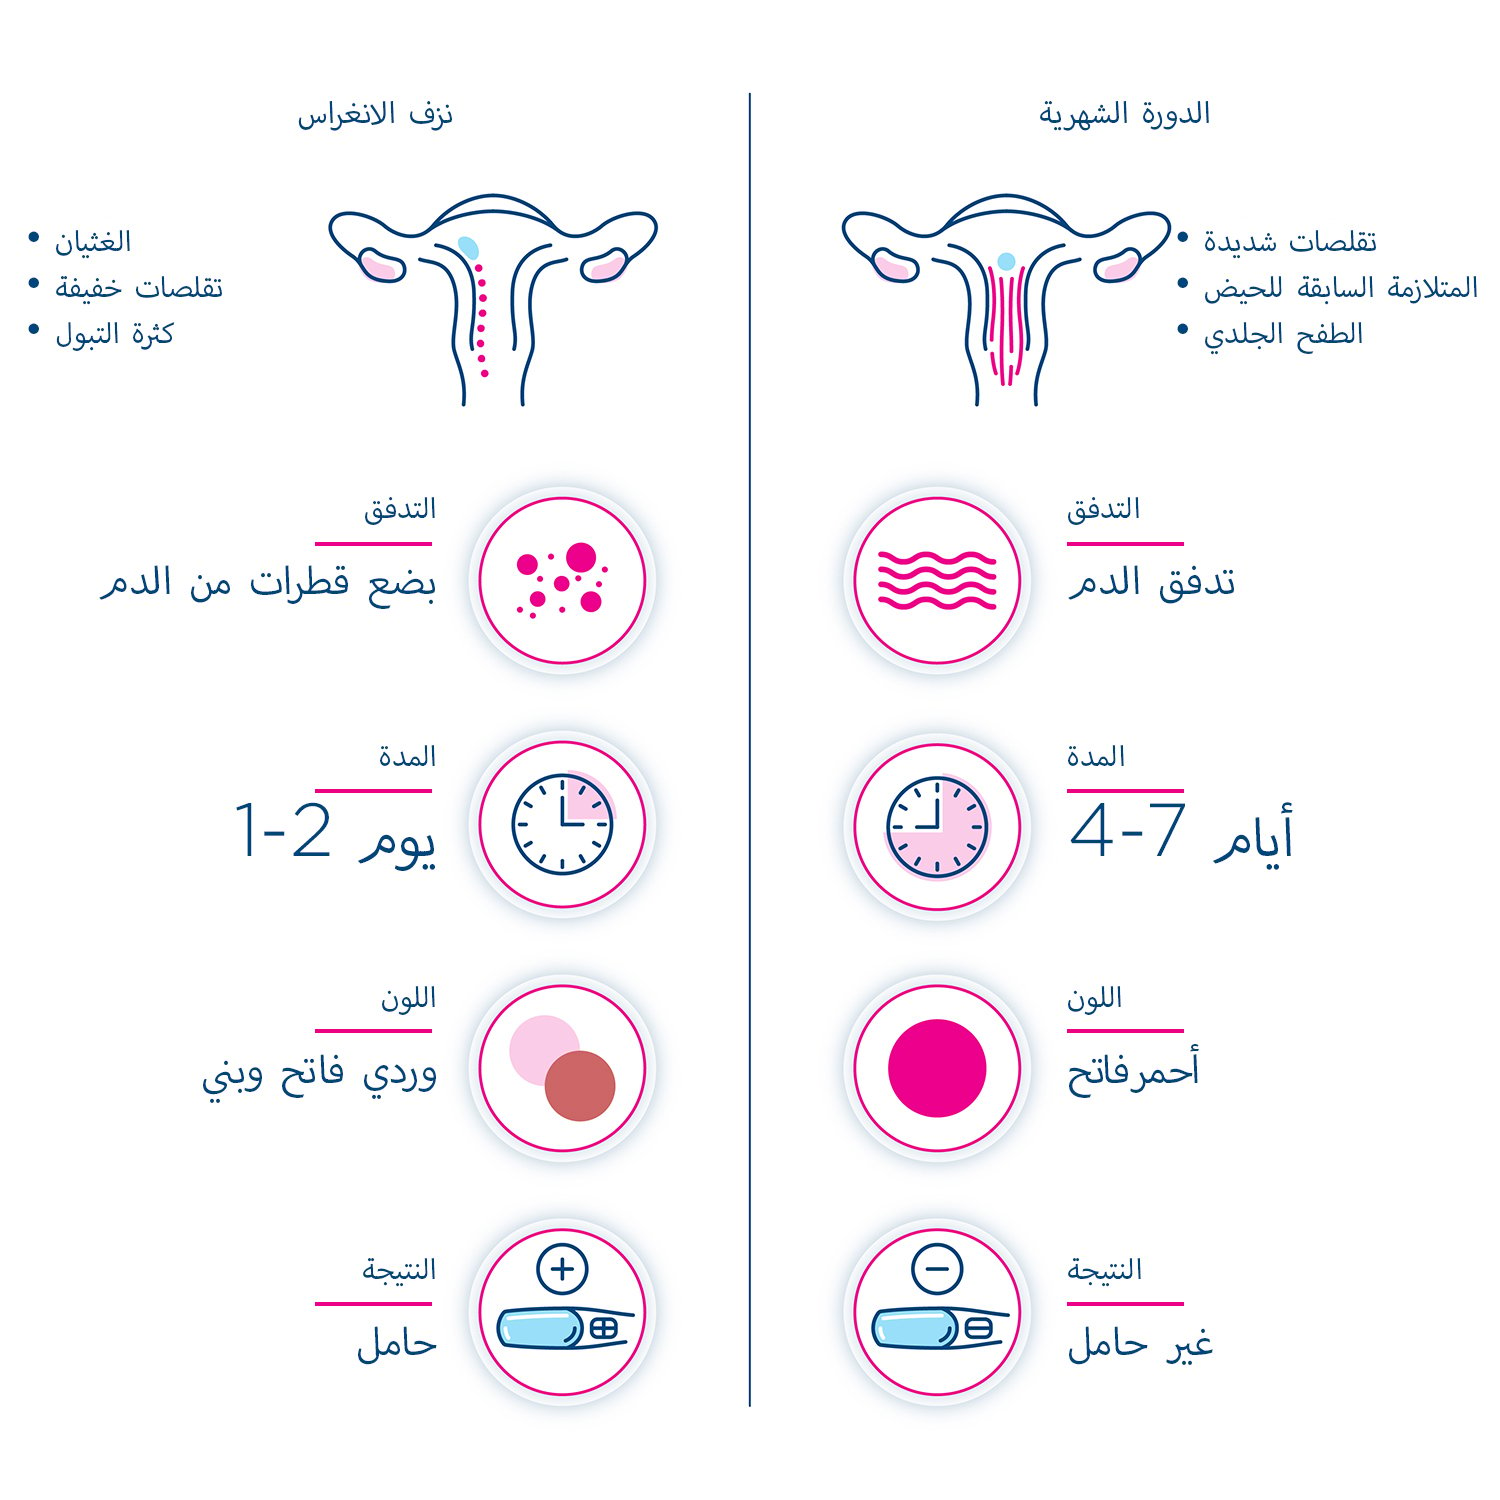 إنفوجرافيك يقارن العلامات والأعراض لمعرفة الفرق بين نزيف الانغراس والدورة الشهرية.